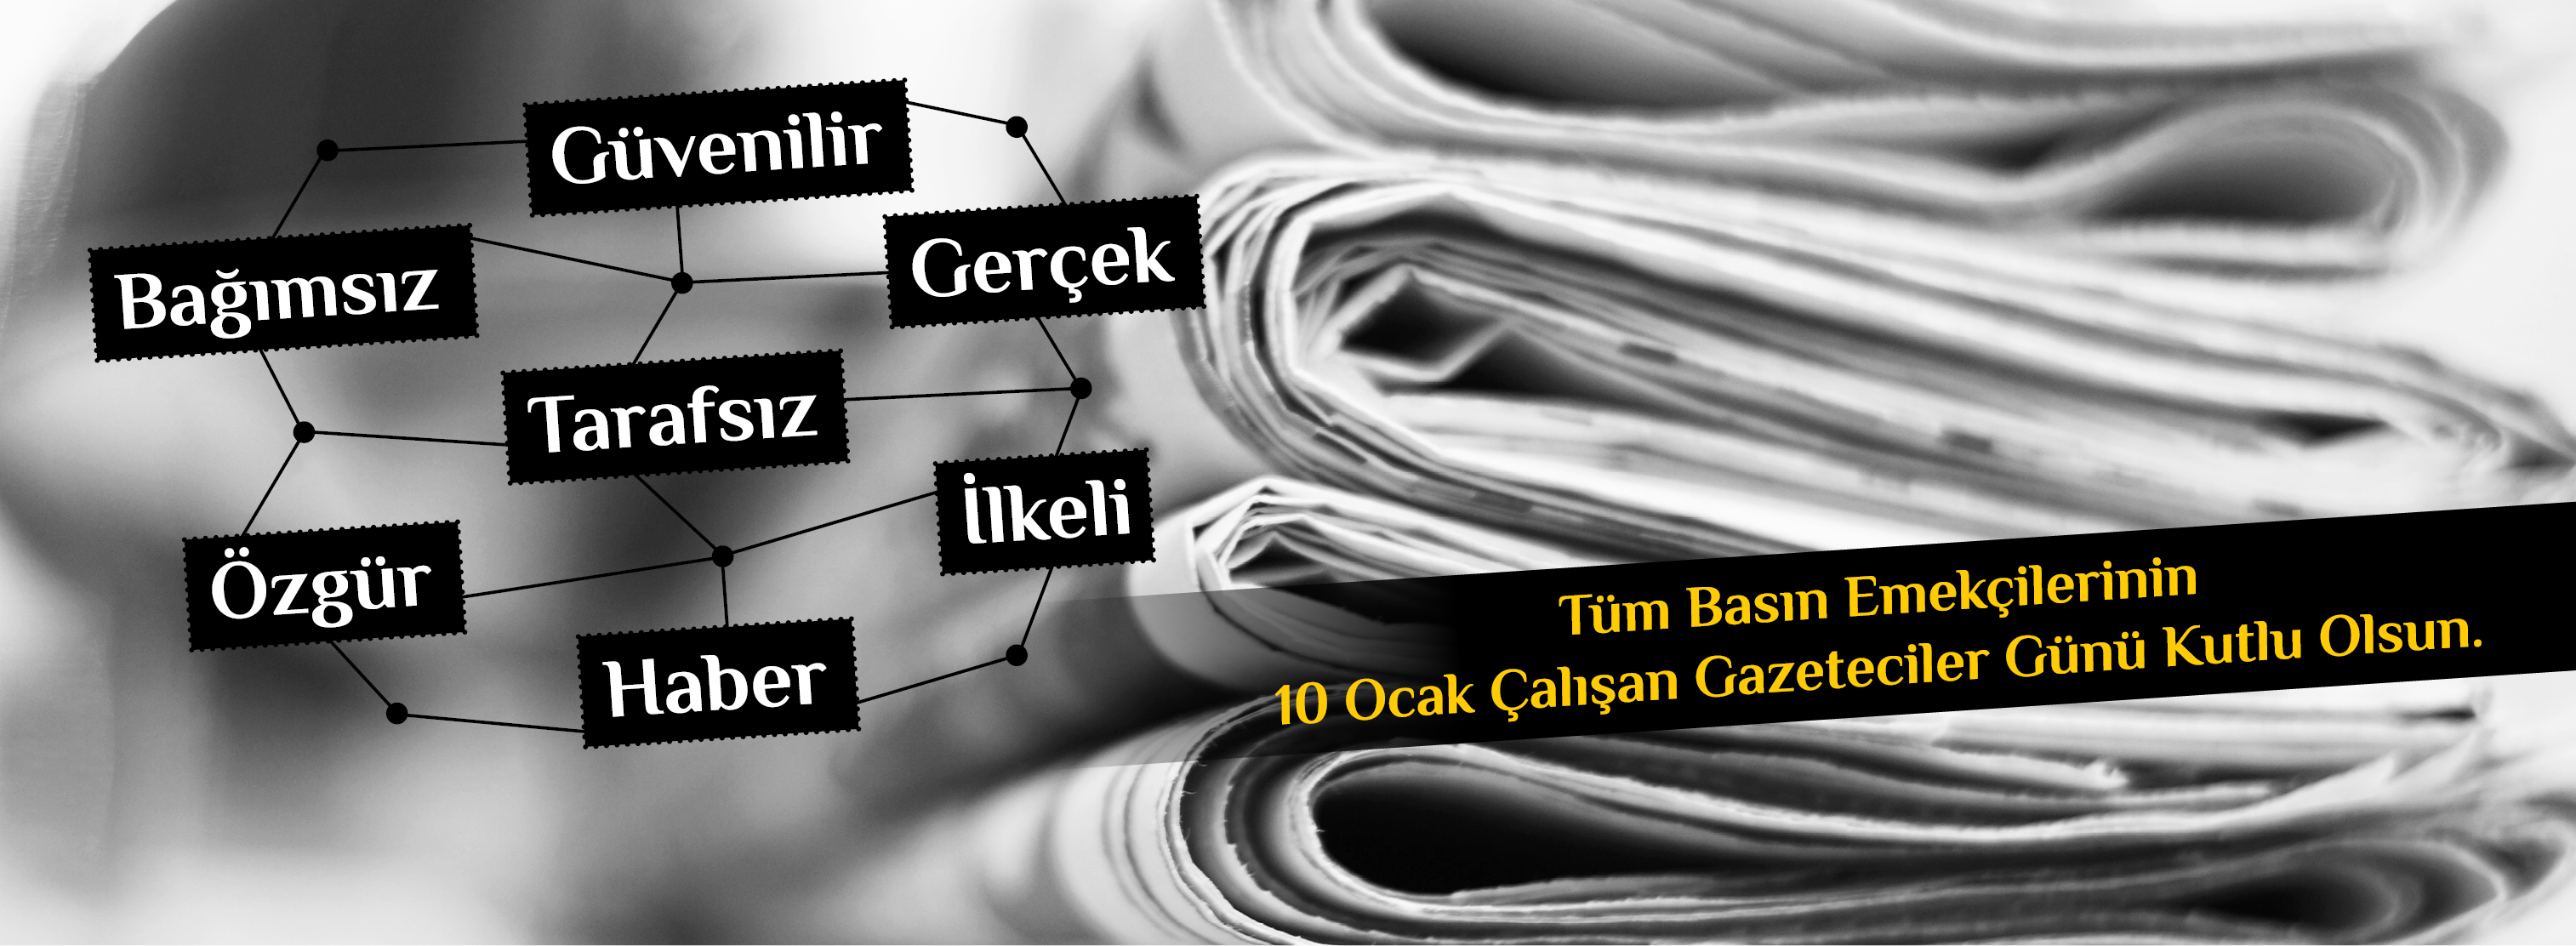 Belediye Başkanı Sayın Ülgür Gökhan'ın 10 Ocak Çalışan Gazeteciler Günü Mesajı...